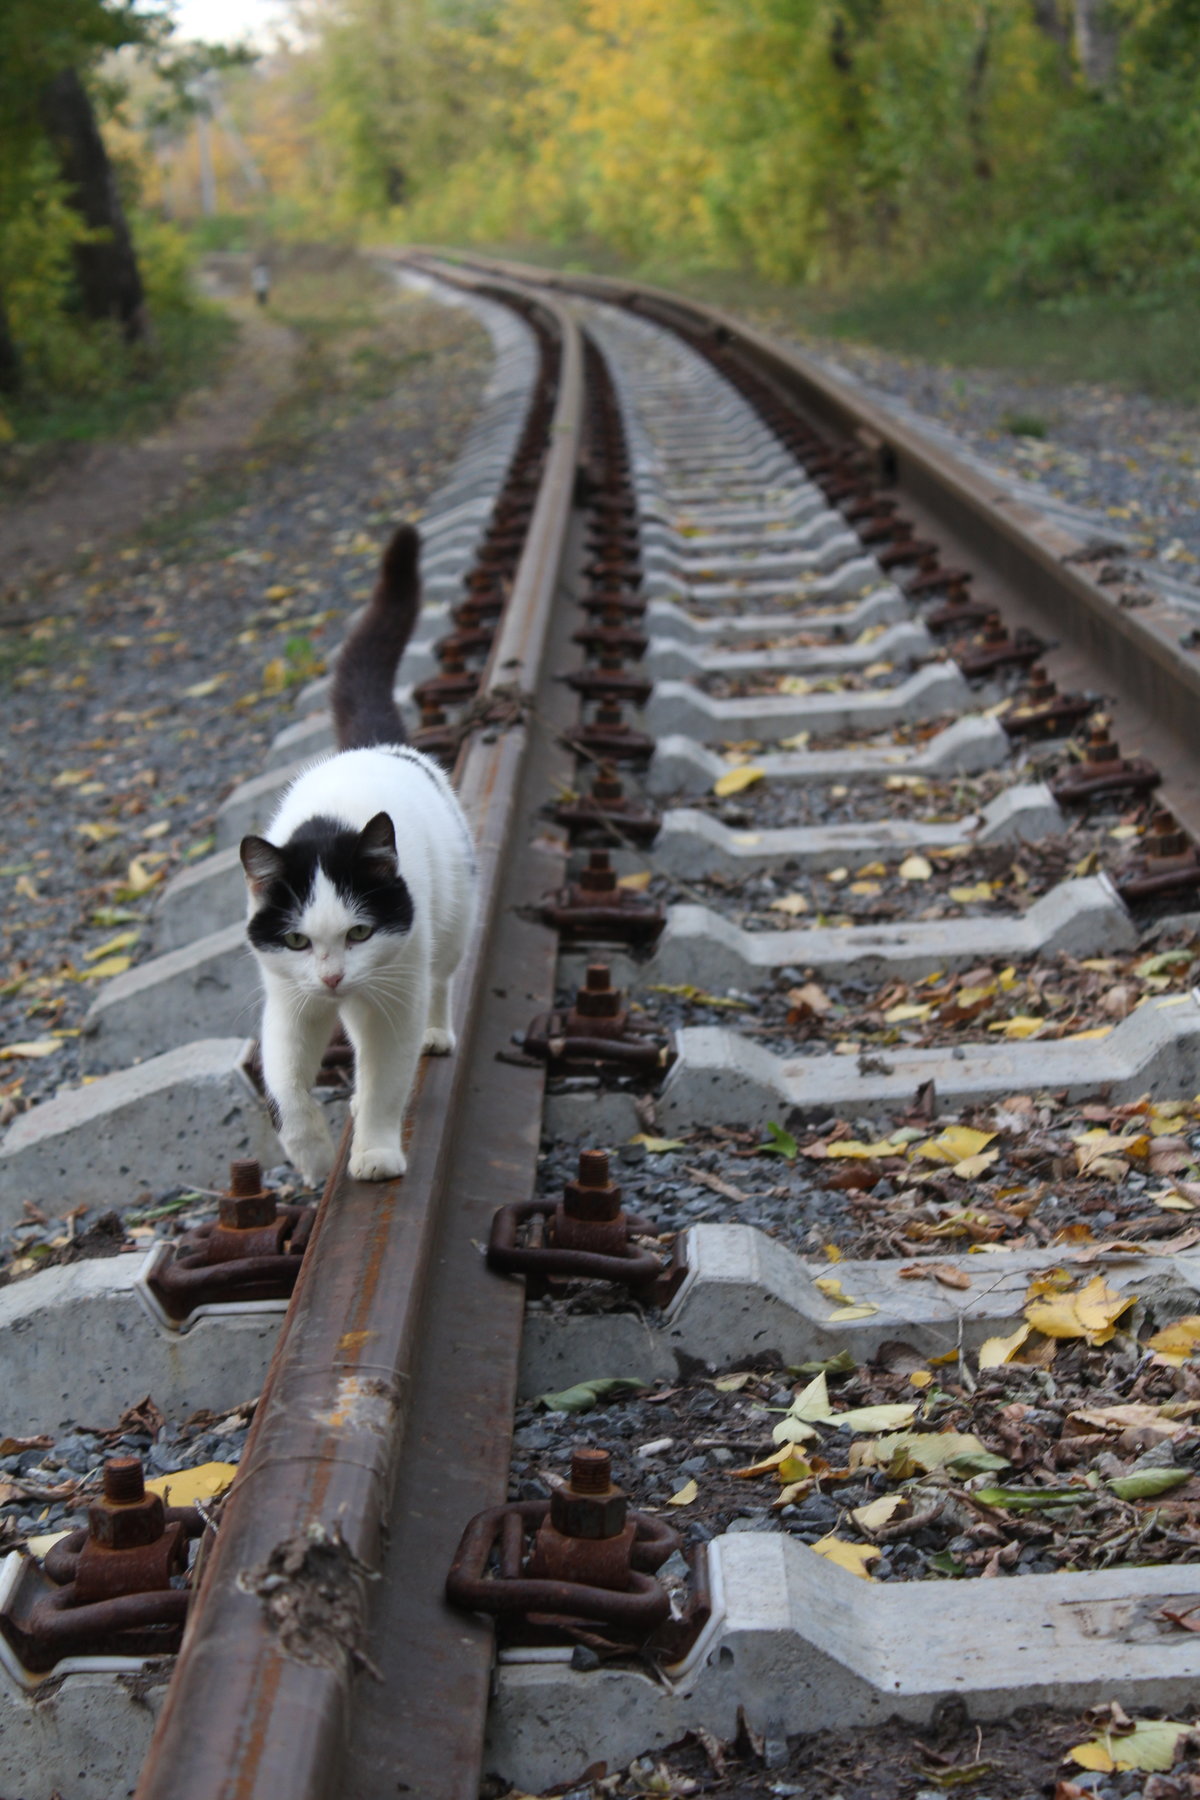 Опять от меня сбежала текст. Коты на железной дороге. Кошка на рельсах. Кот идет по рельсам. Рельсы.